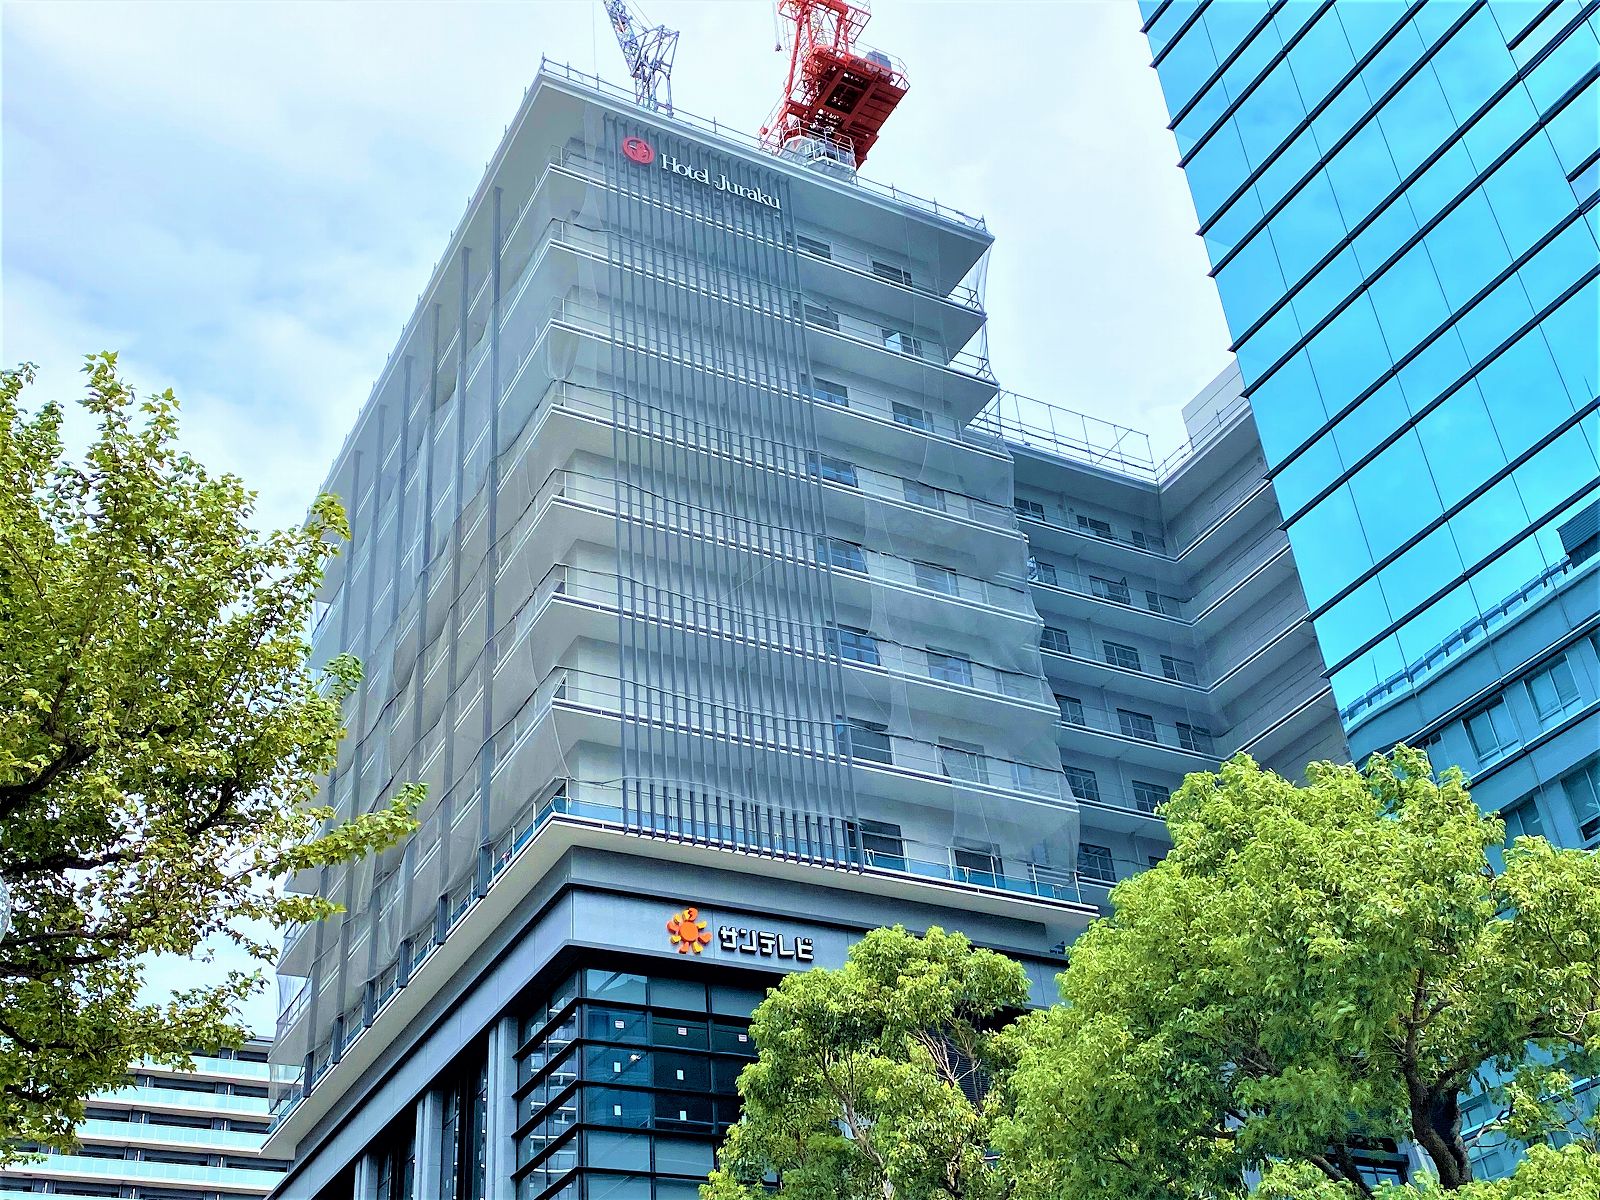 JR神戸駅南側に、サンテレビの新社屋と「神戸ホテルジュラク」を建設中。2021年春にオープン予定だよ！ #新規オープン #サンテレビ新社屋 #神戸ホテルジュラク #神戸駅前プロジェクト